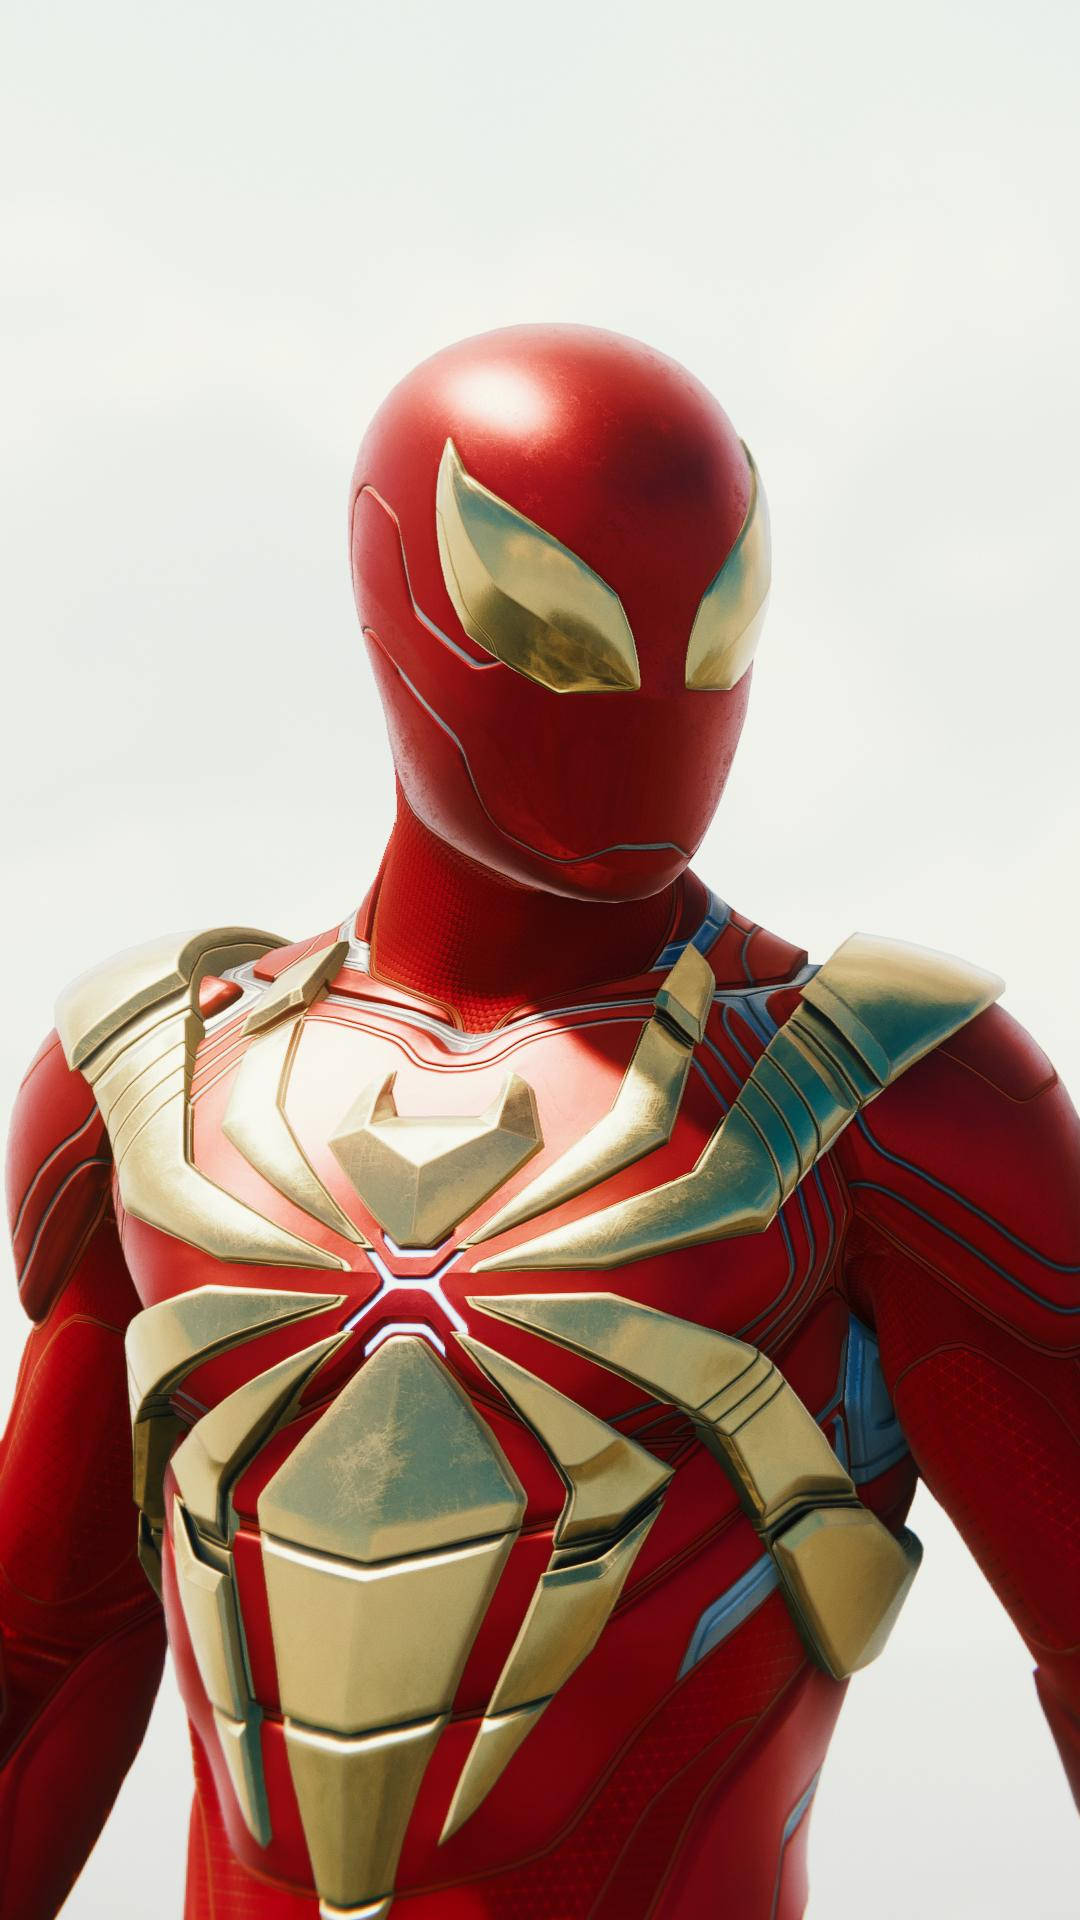 Spidermancon Rifinitura Lucida In Armatura D'oro Iron Spider. Sfondo